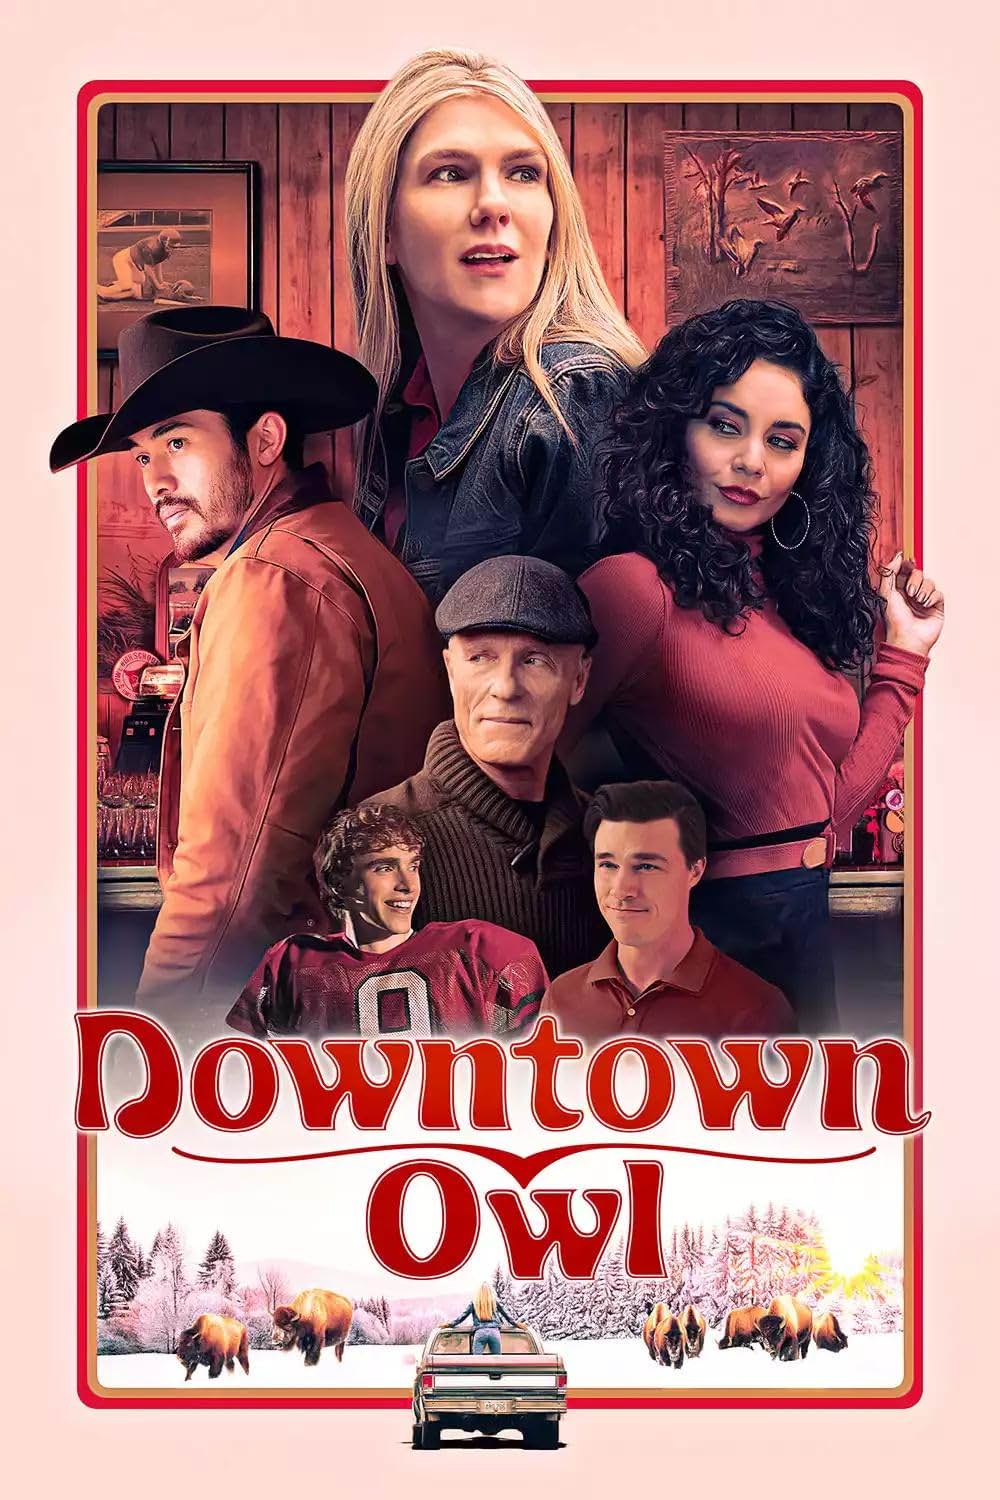 「Downtown Owl（原題）」の画像